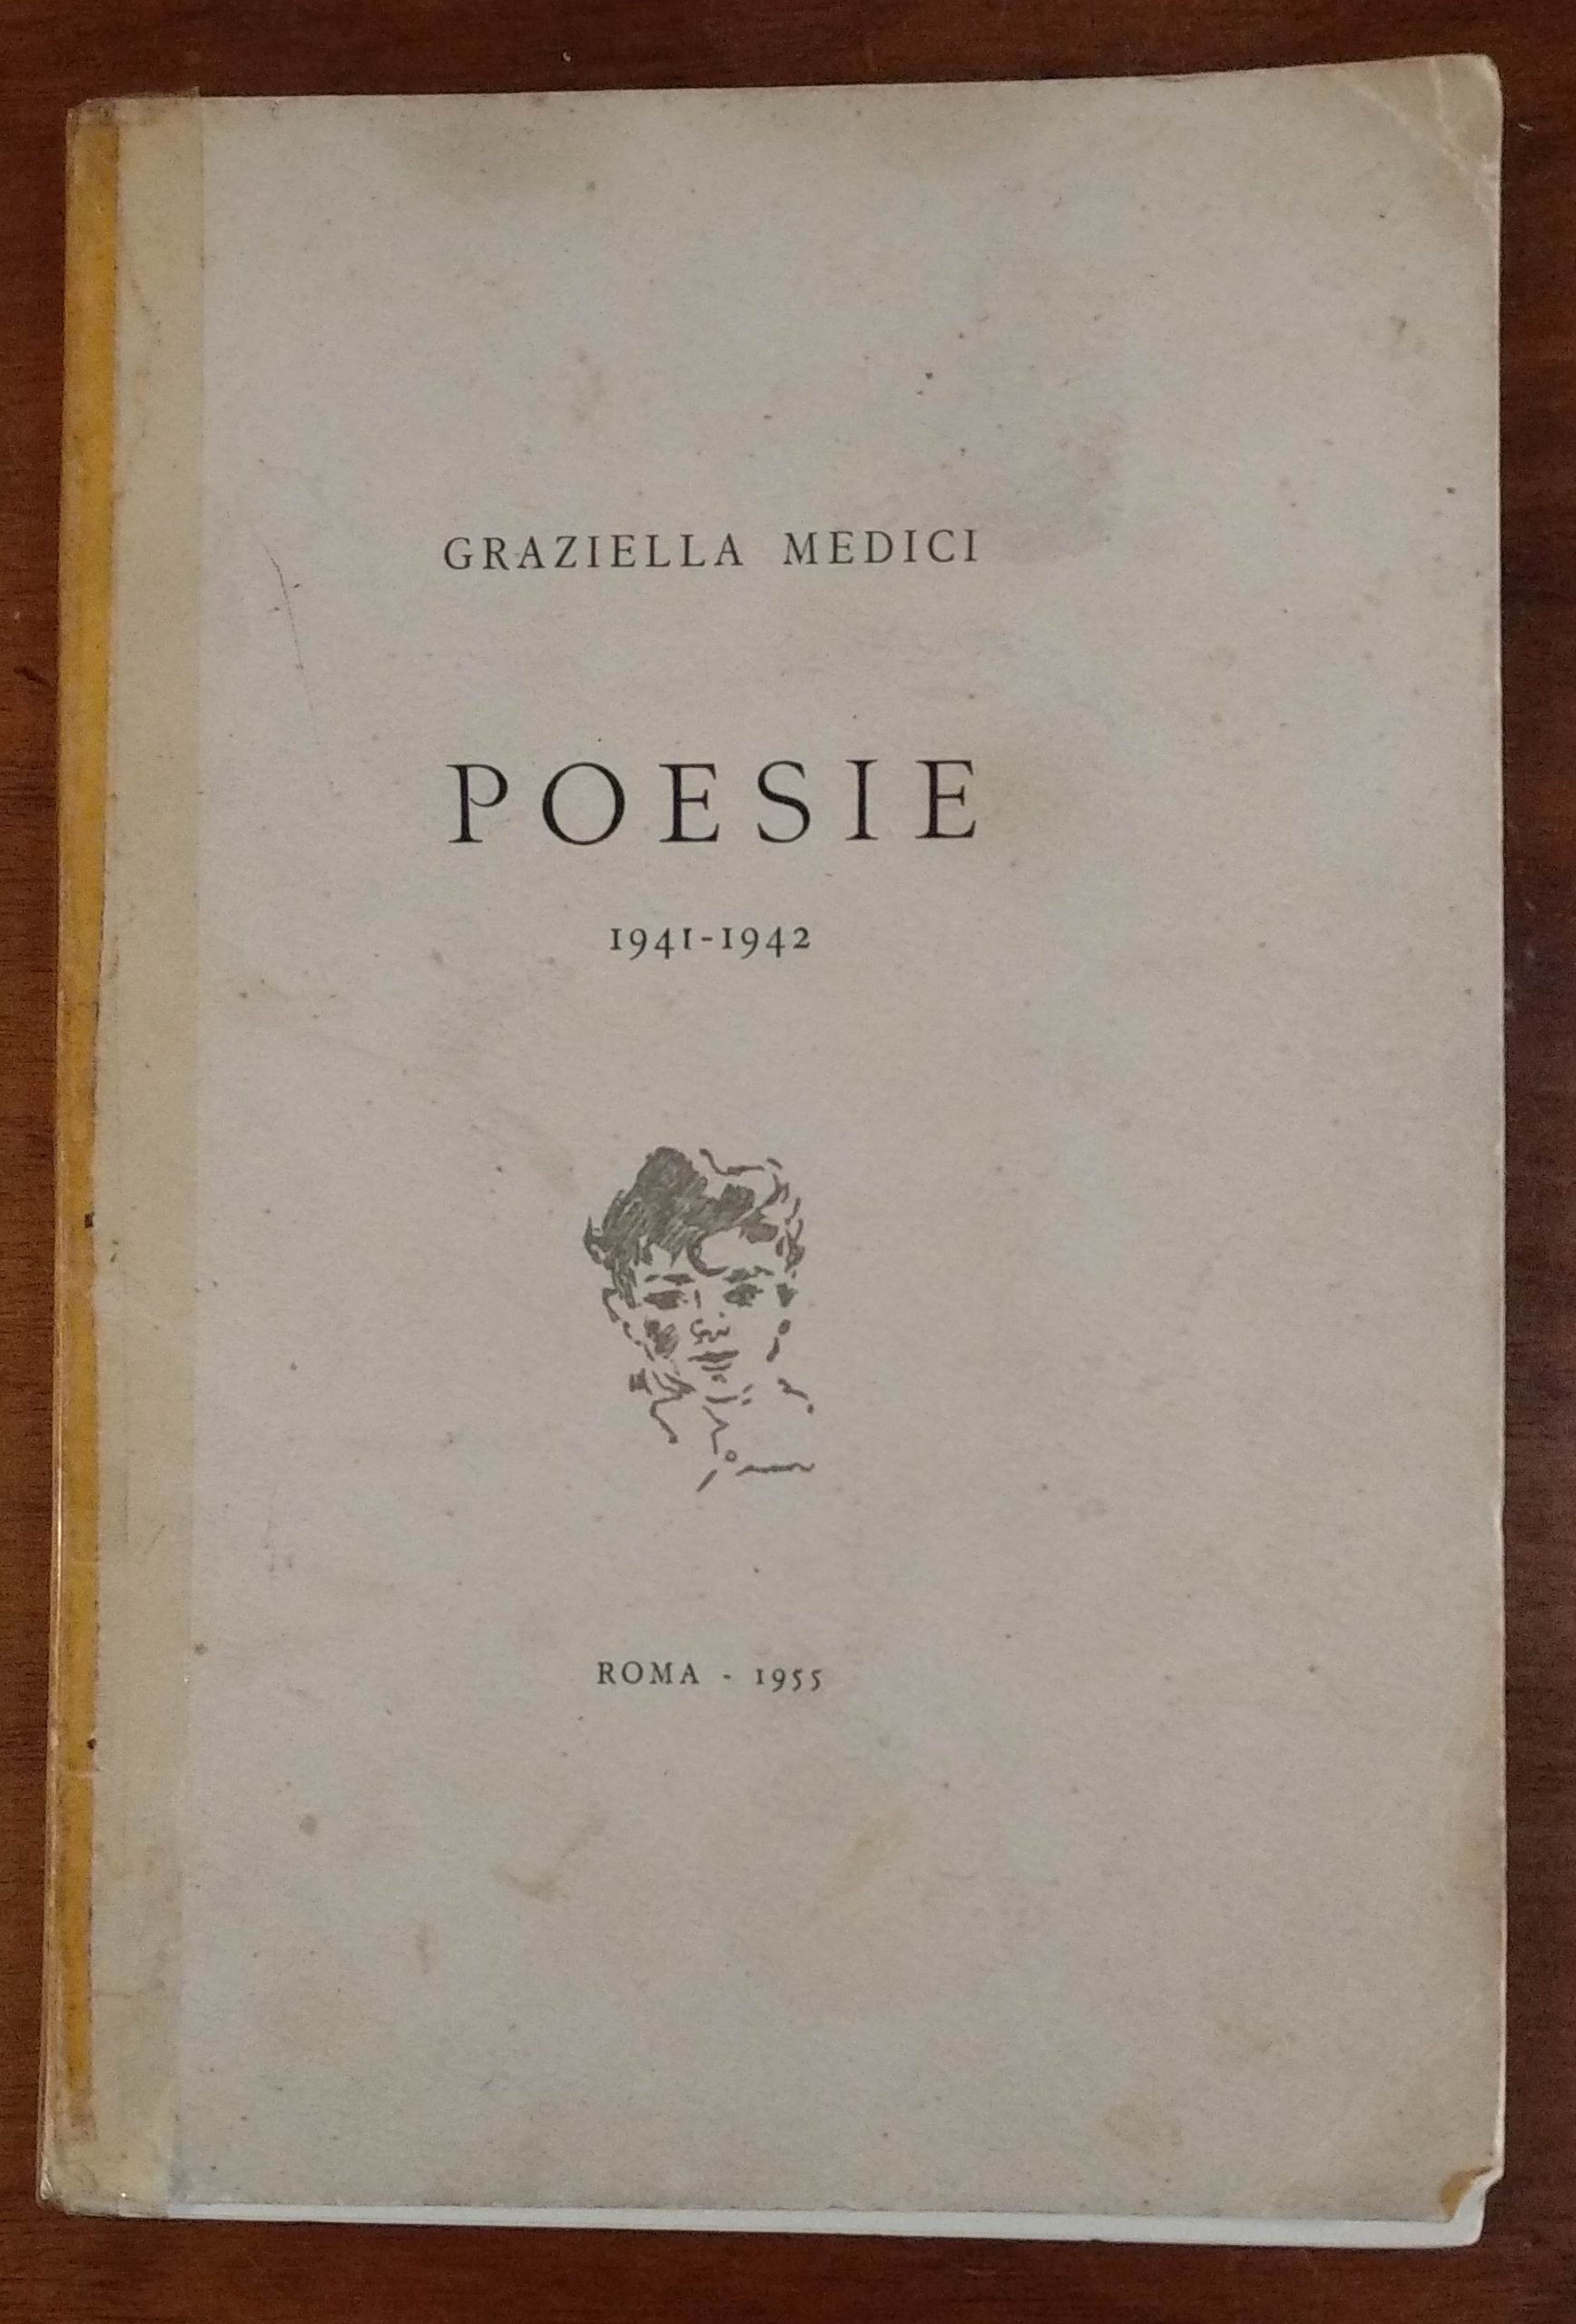 Chi era Graziella Medici? Come un libricino di poesie ci porta fino in Romania e poi… chissà!